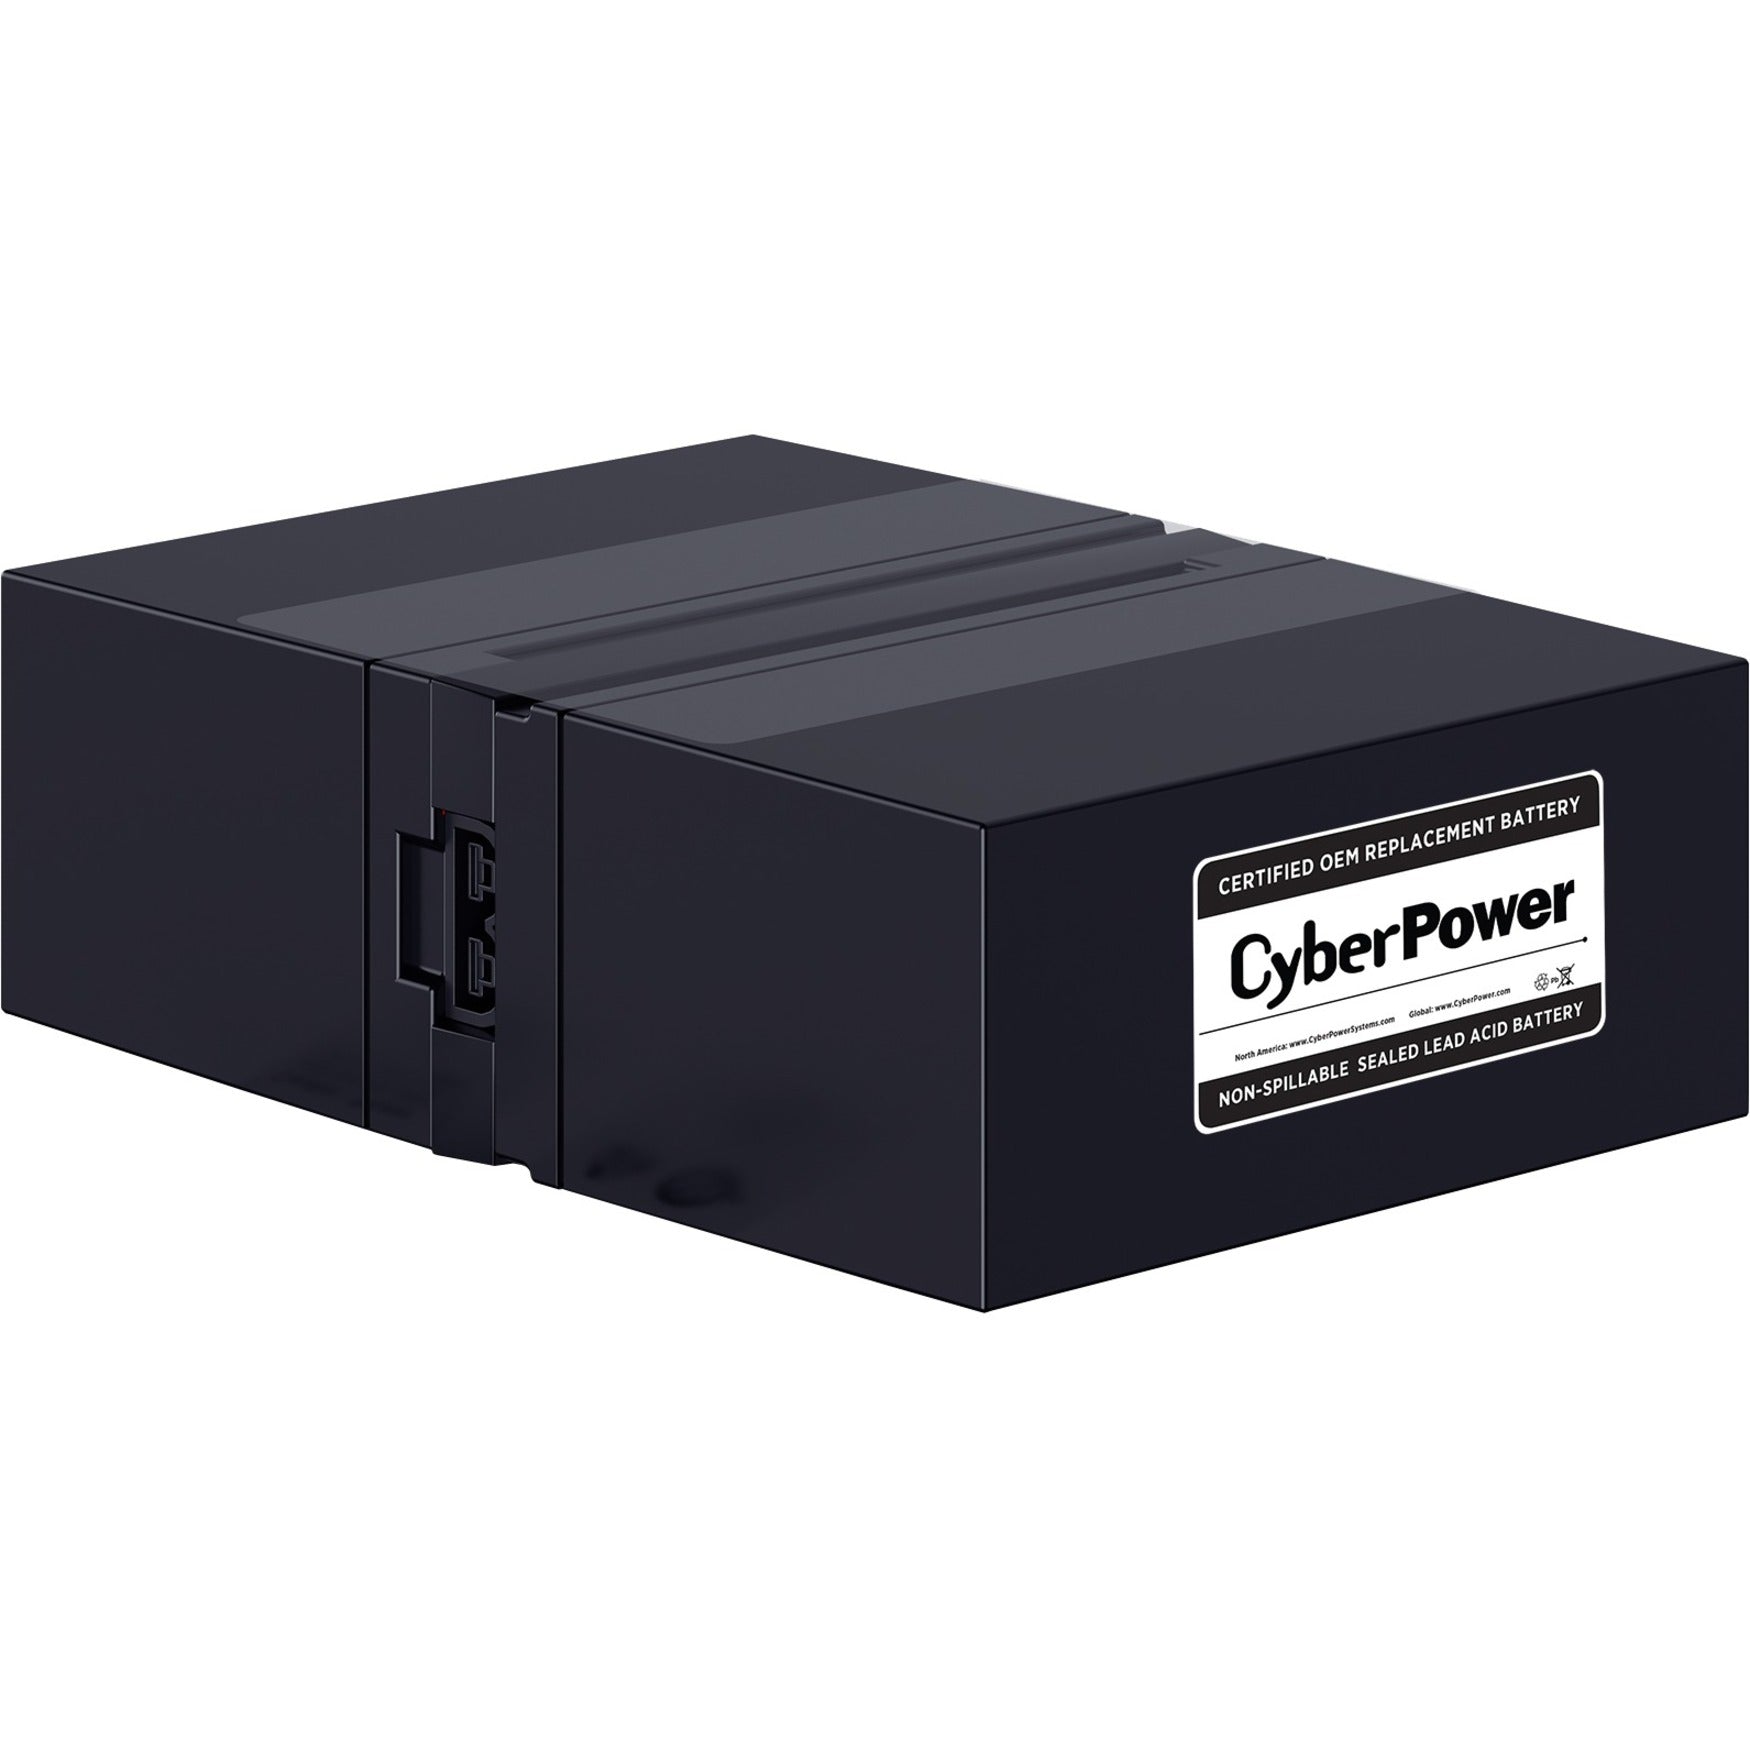 赛博力 RB1280X2B UPS 替换电池组 12V 8AH 18个月保修 铅酸 用户可更换 赛博力品牌。将品牌名称翻译为 CyberPower。